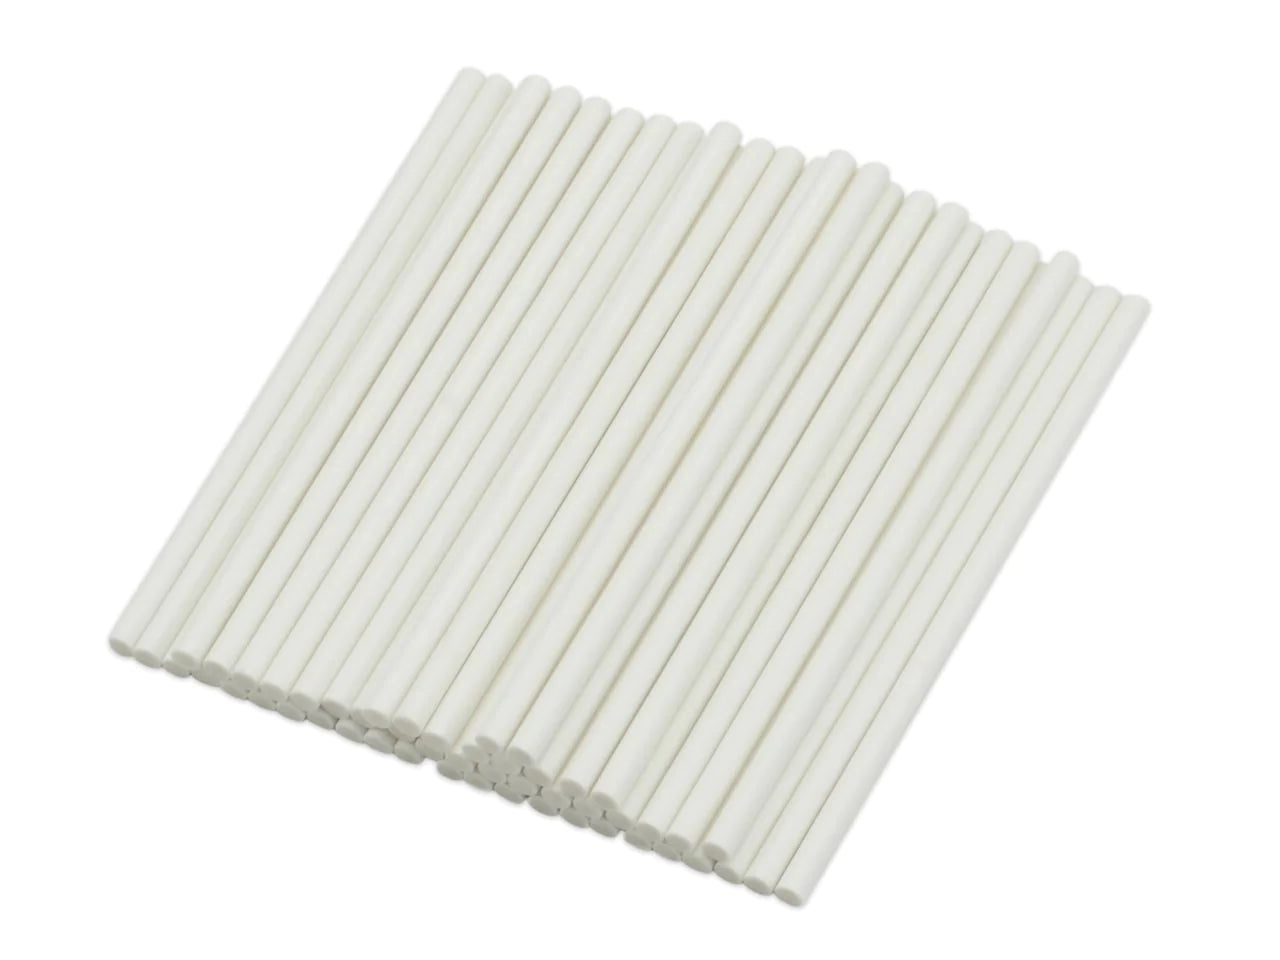 Λευκά χάρτινα sticks 100 τεμάχια 15 εκ.